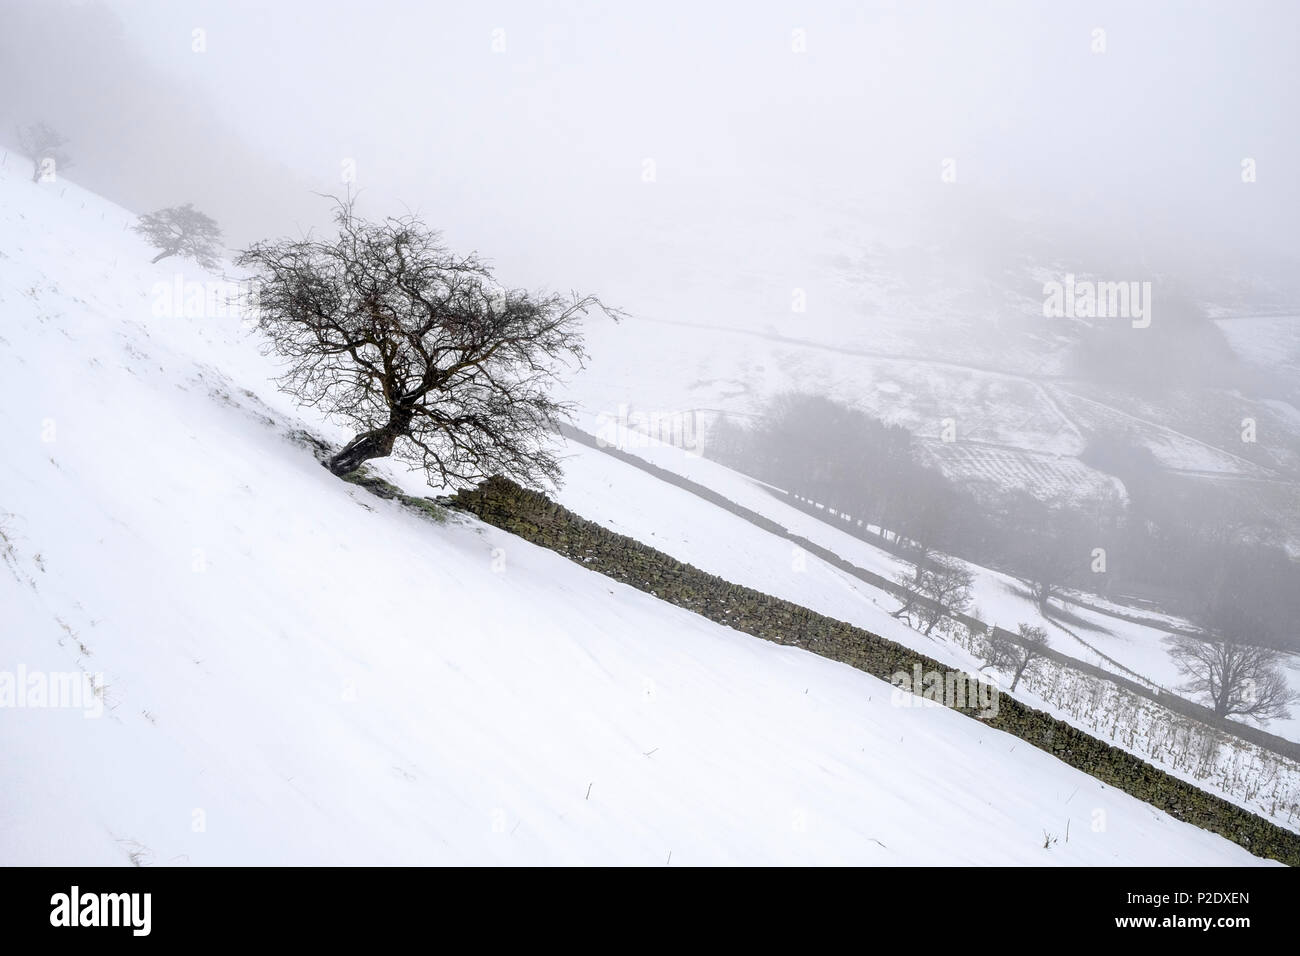 Paysage d'hiver. La neige qui tombe sur les collines dans la campagne de Peak District. Scène enneigée à Broadlee Bank Tor, Vale de Edale, Derbyshire, Angleterre, RU Banque D'Images